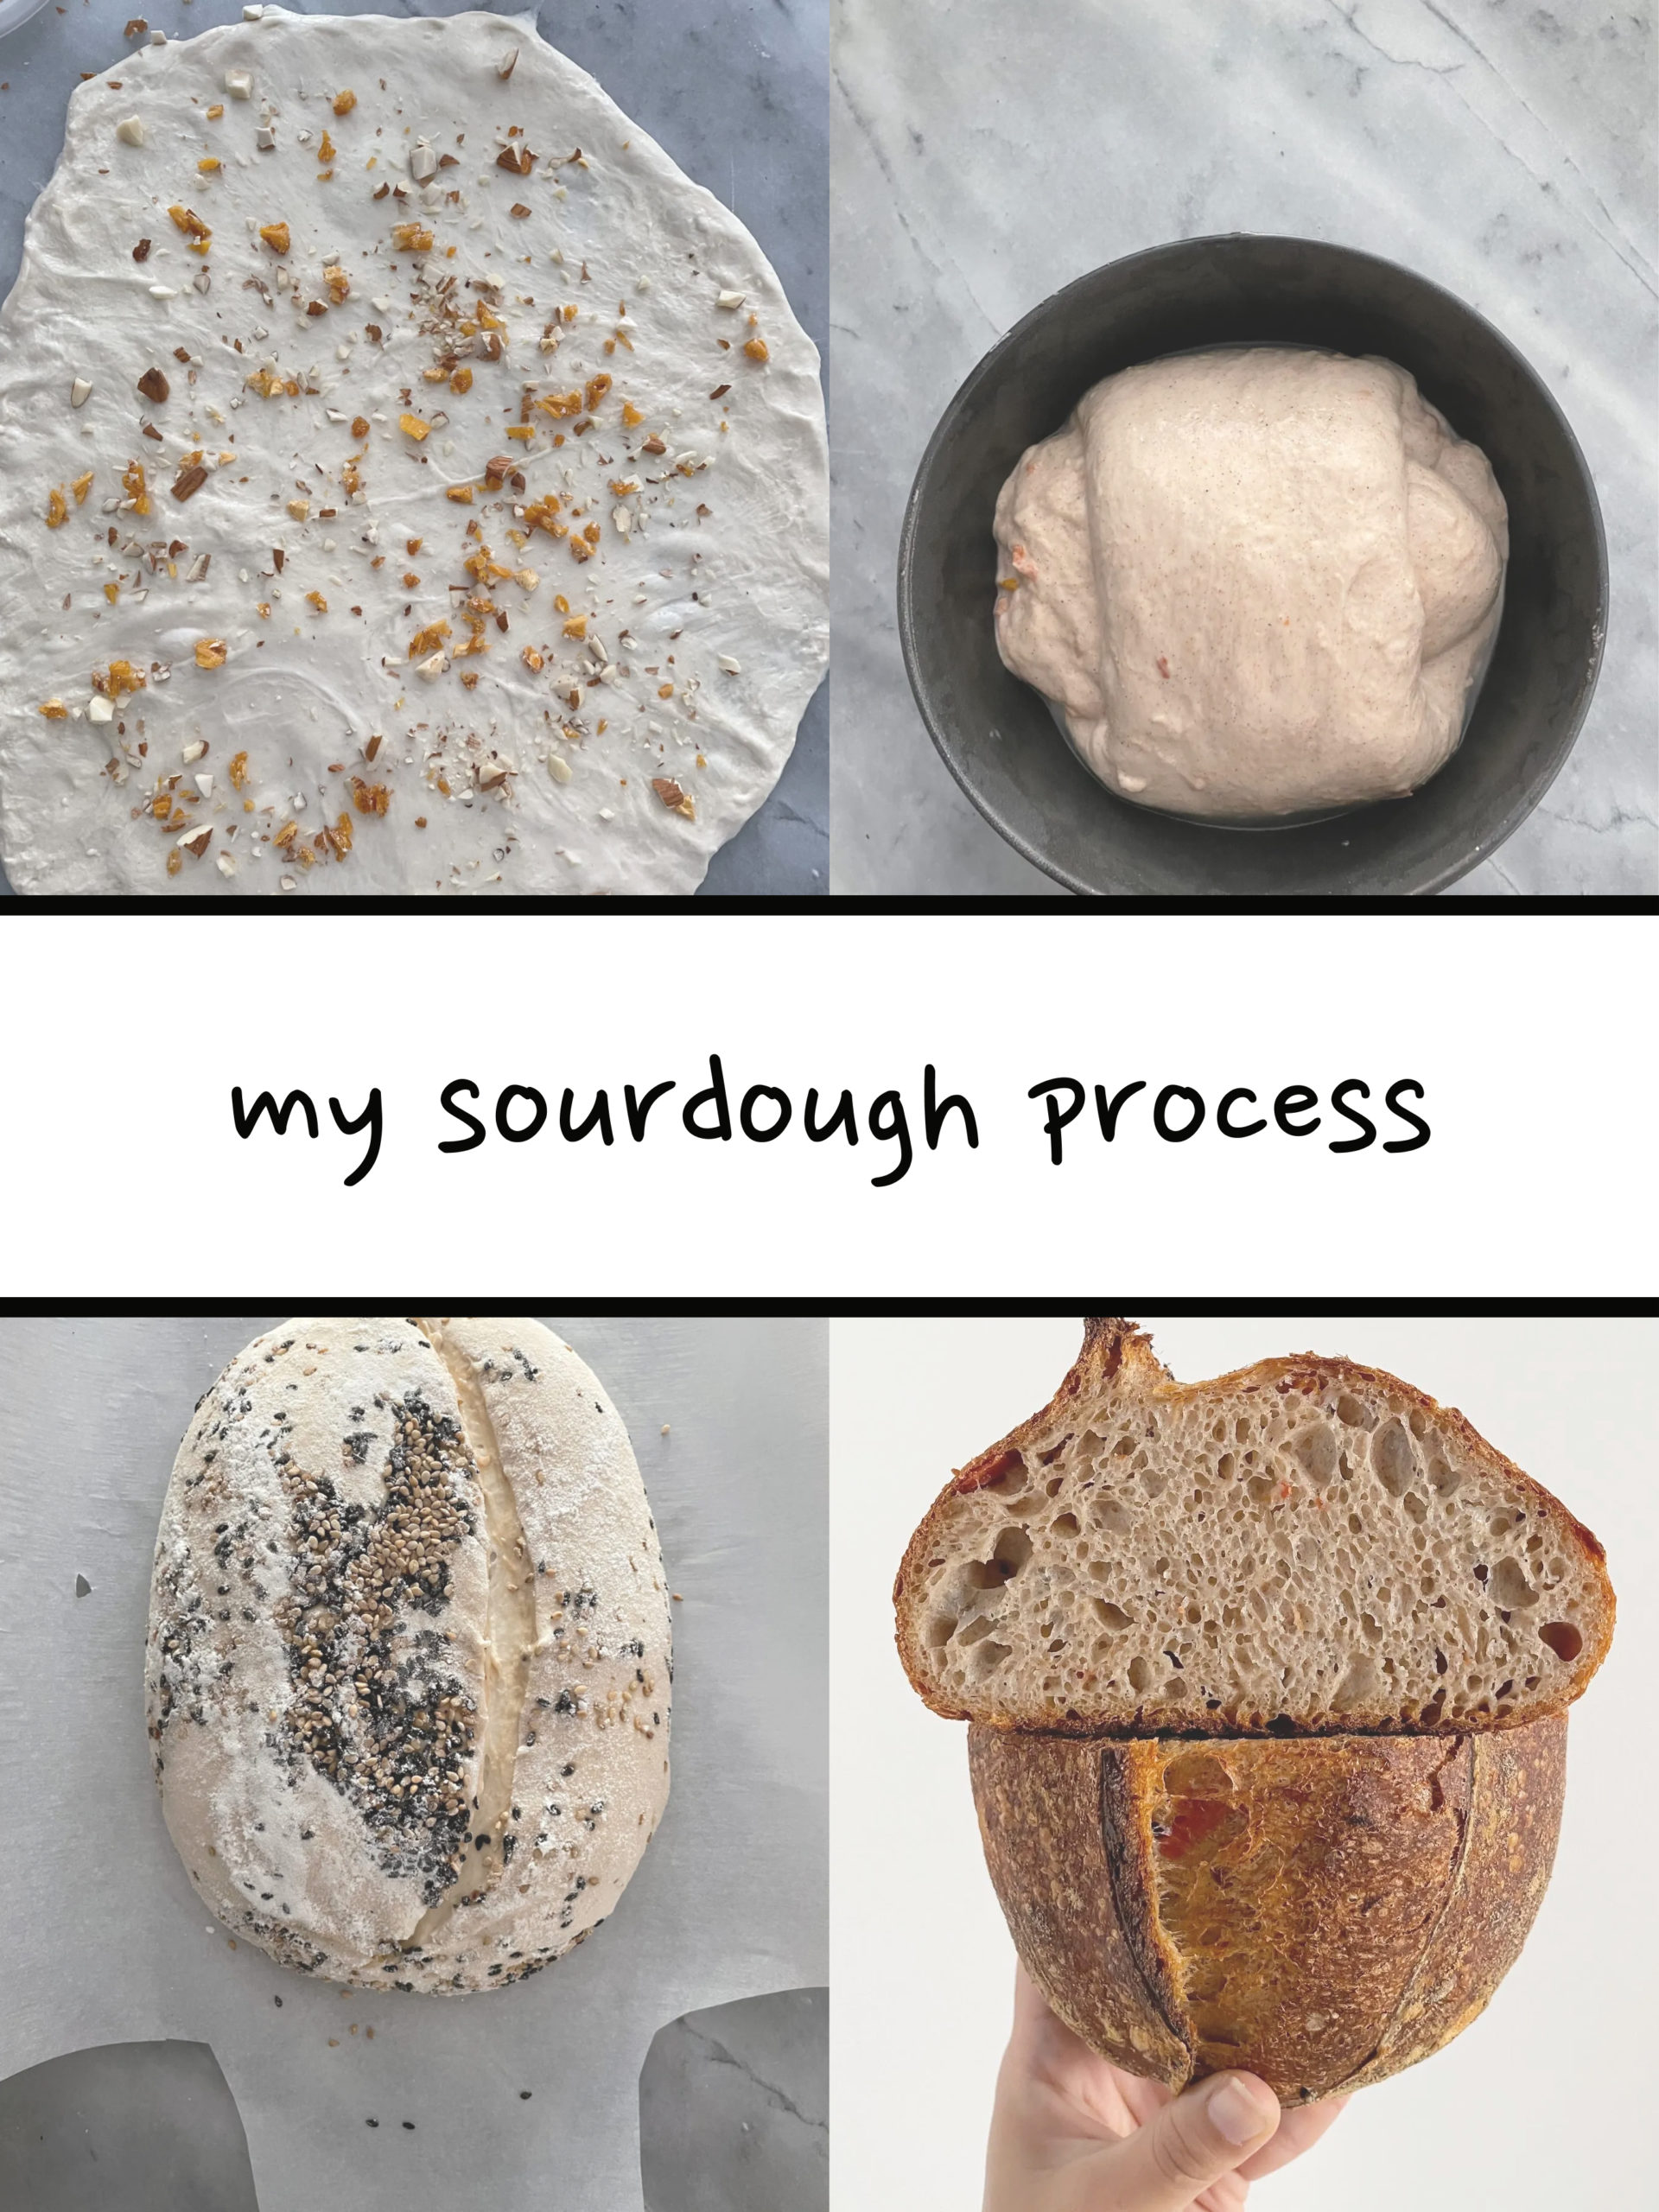 My sourdough process: starter maintenance & baking schedule